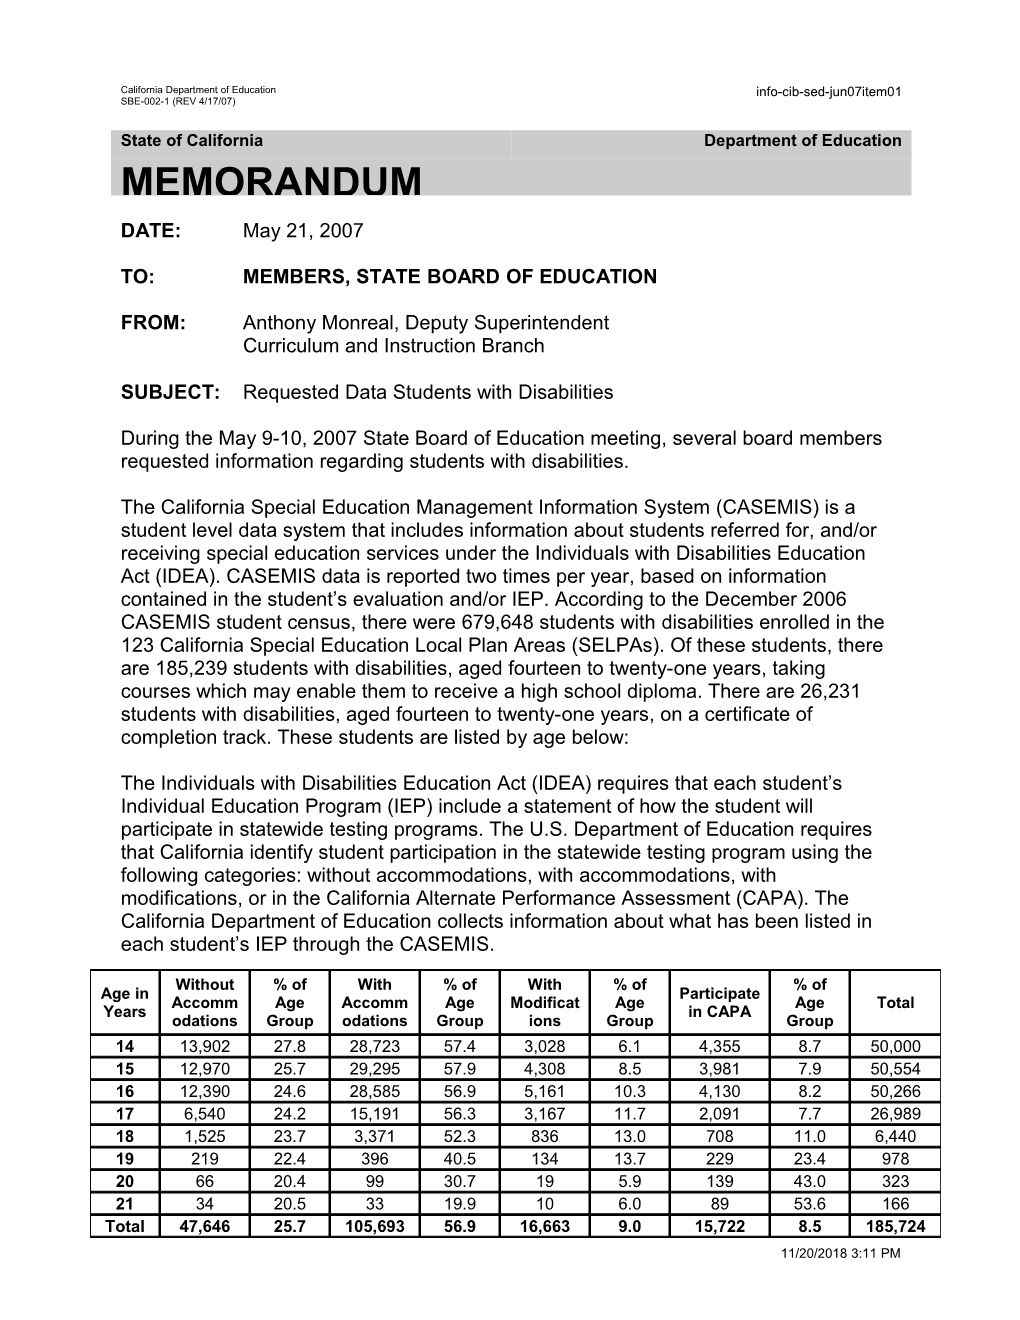 June 2007 Memorandum Item 01 - Information Memorandum (CA State Board of Education)